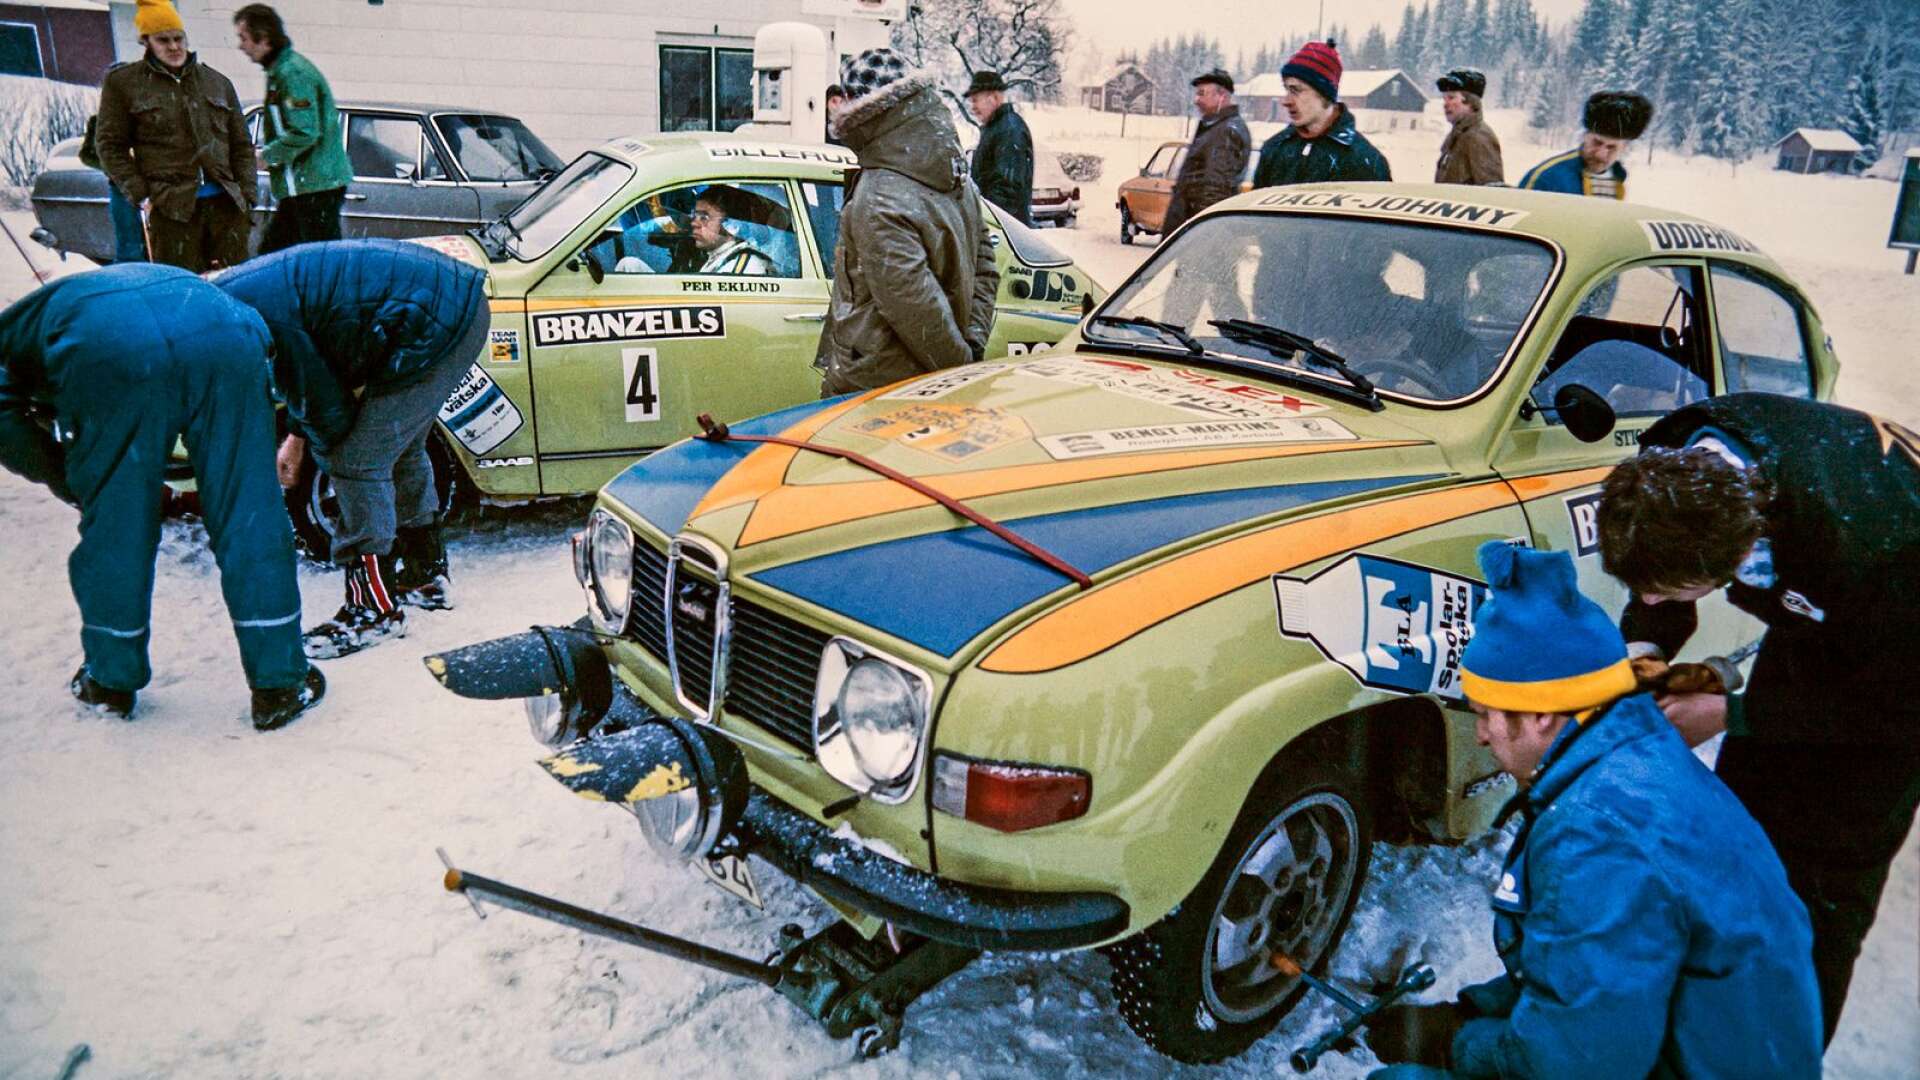 Värmland och bilsport är synonymt med varandra. Men vad är förklaringen till sportens starka fäste i landskapet? Det är en av frågorna som kommer att besvaras i VF:s artikelserie de kommande veckorna. I dag om legendarerna, och då bland andra Per Eklund på bilden ovan från Svenska rallyt 1975.